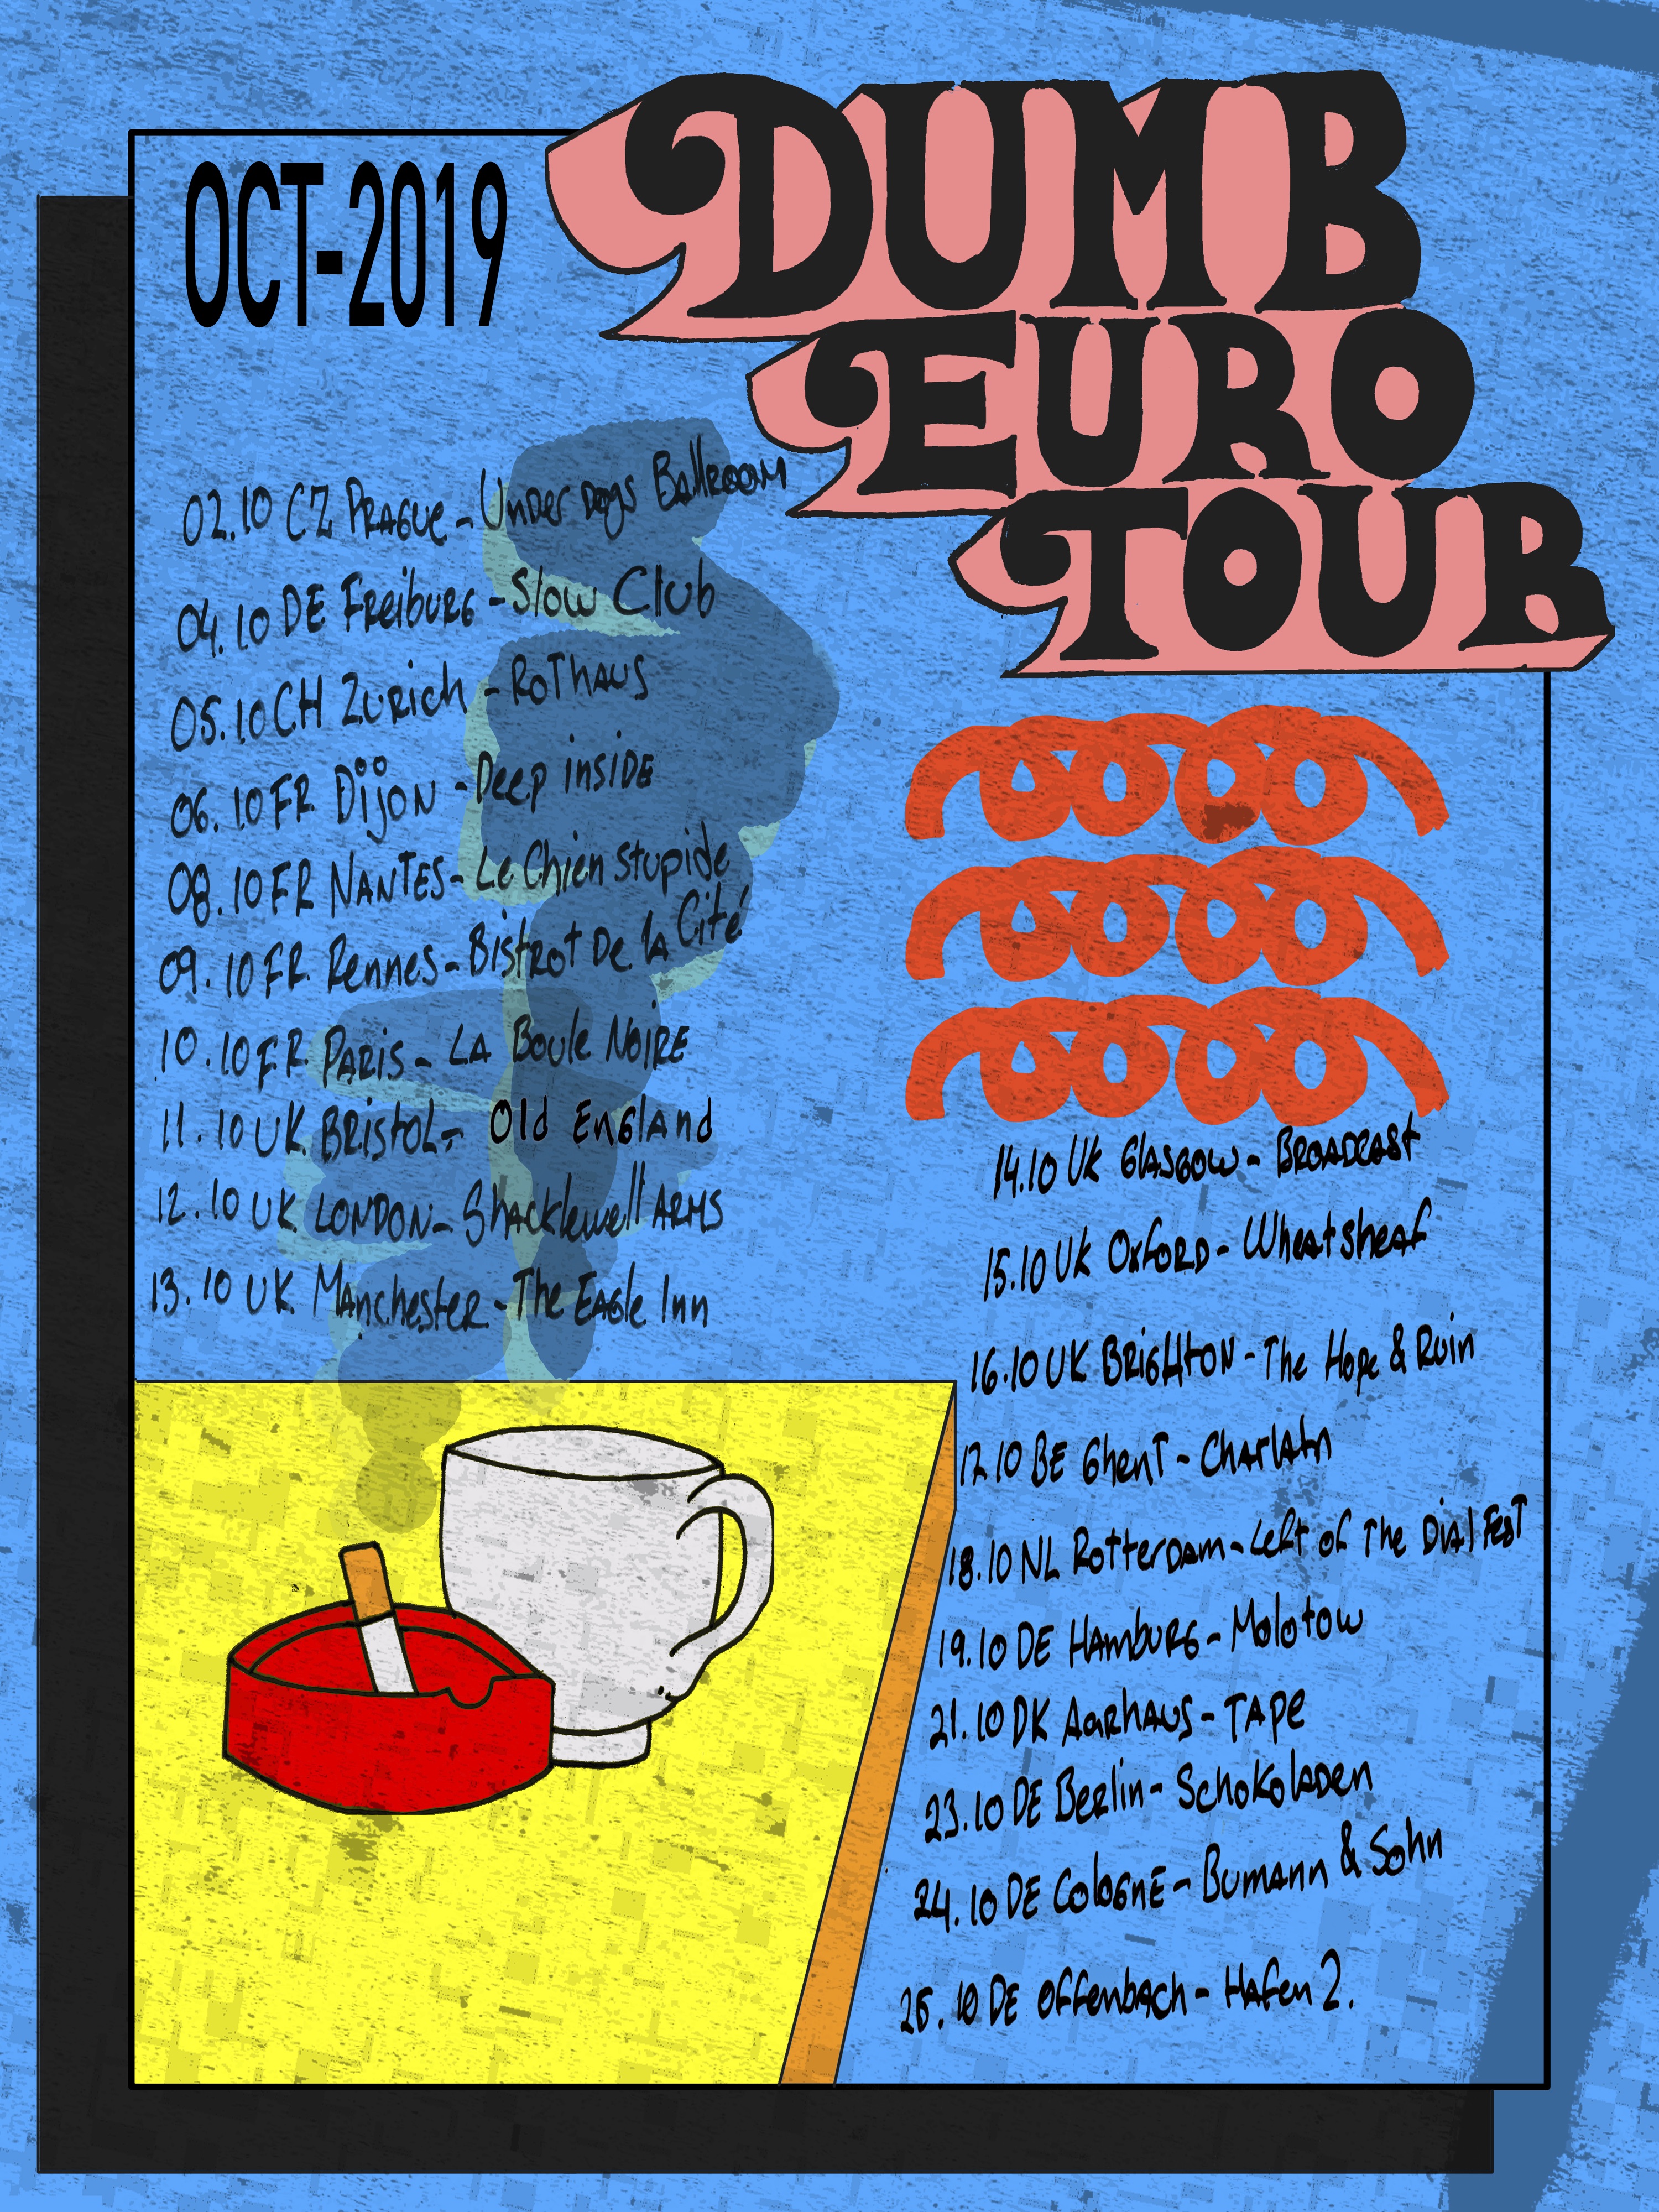 Tour 7